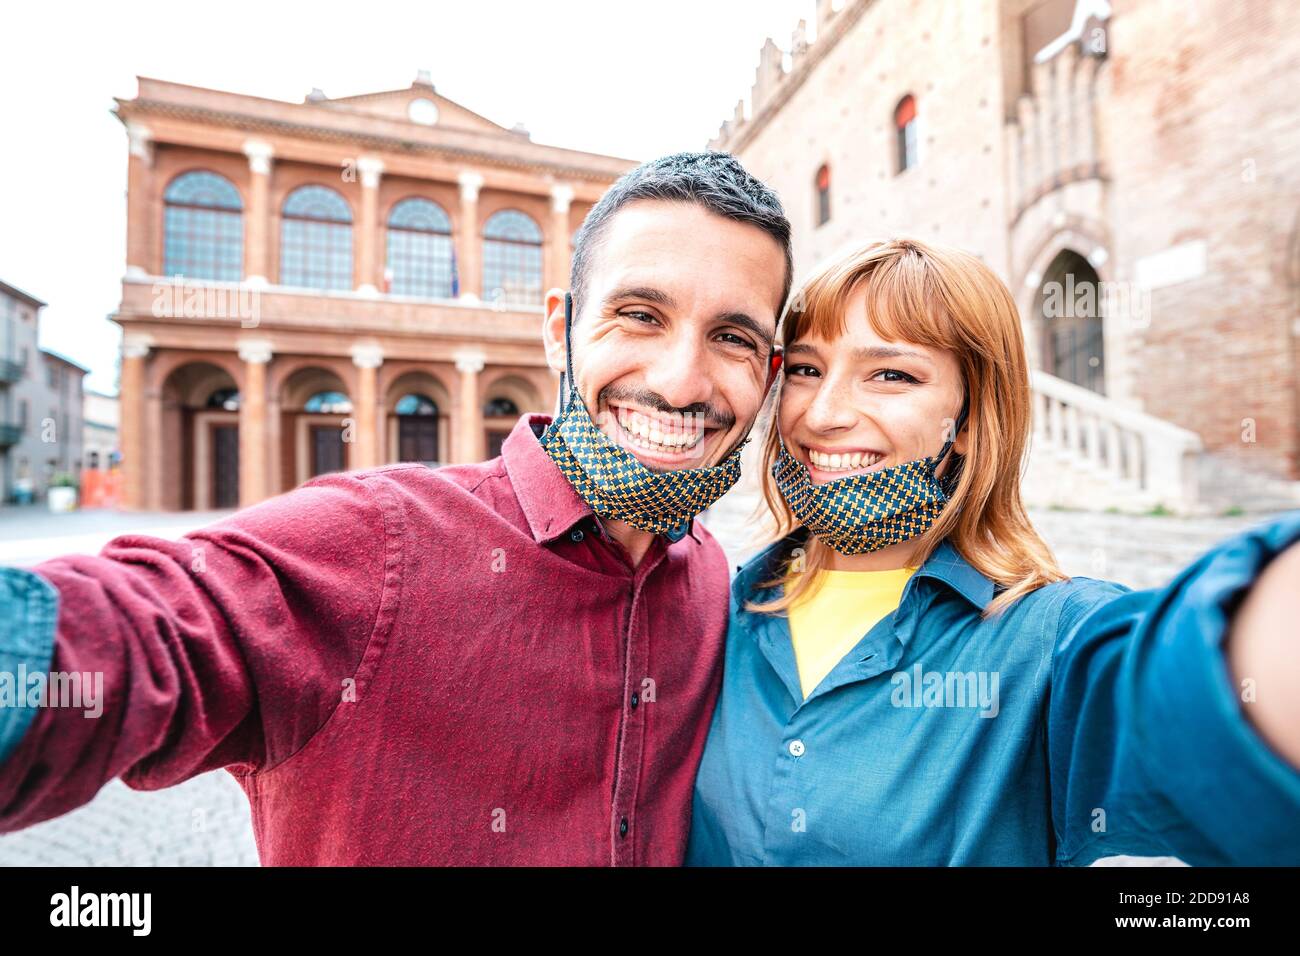 Glücklich Freund und Freundin in der Liebe unter Selfie mit Gesicht Masken in der Altstadt Tour - Wanderlust Lifestyle Reisen Konzept mit Touristen-Paar Stockfoto